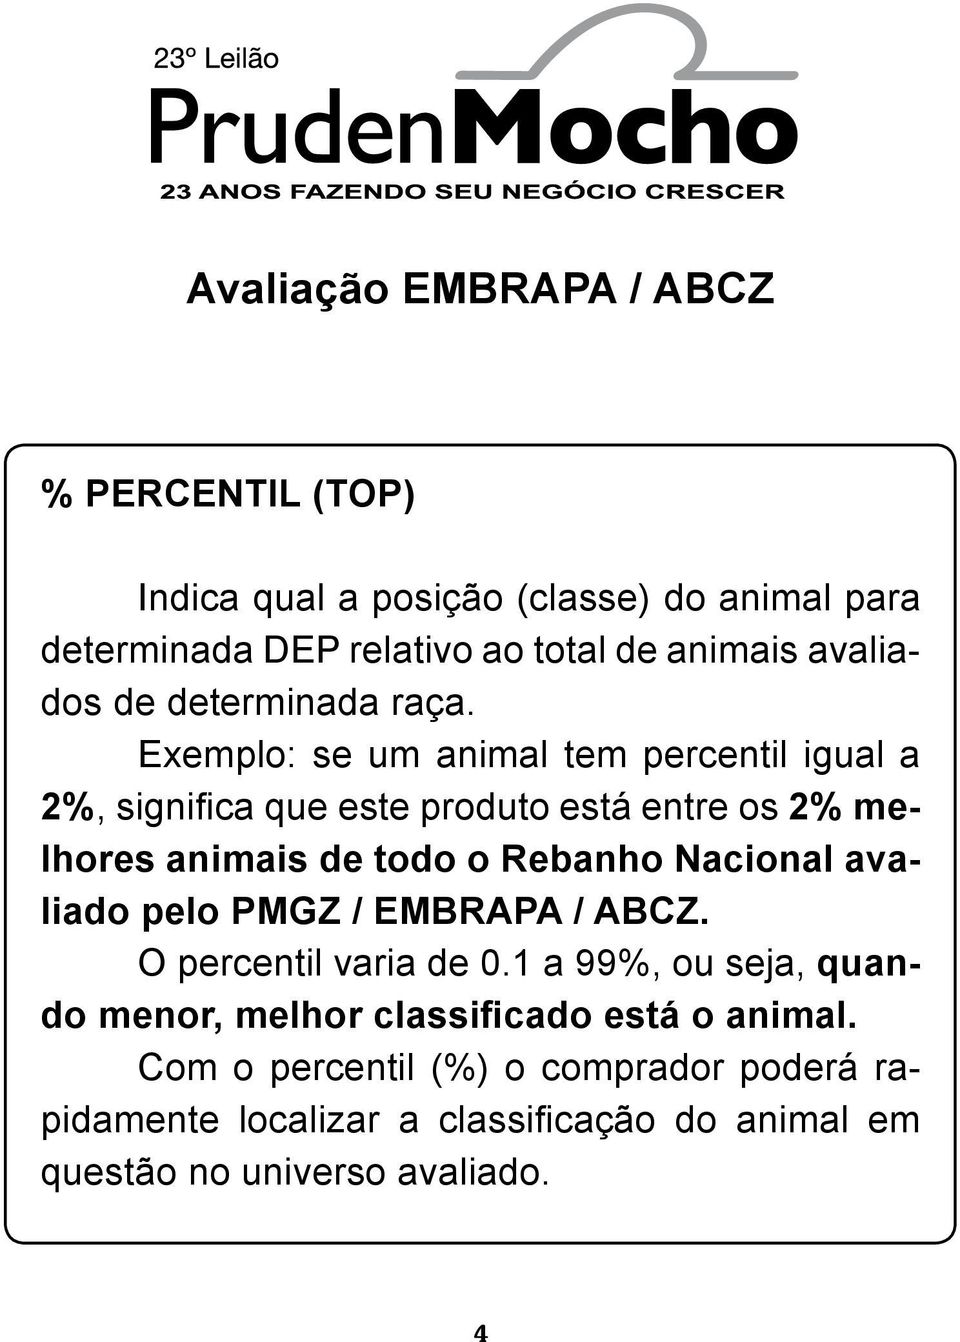 Exemplo: se um animal tem percentil igual a 2%, significa que este produto está entre os 2% melhores animais de todo o Rebanho